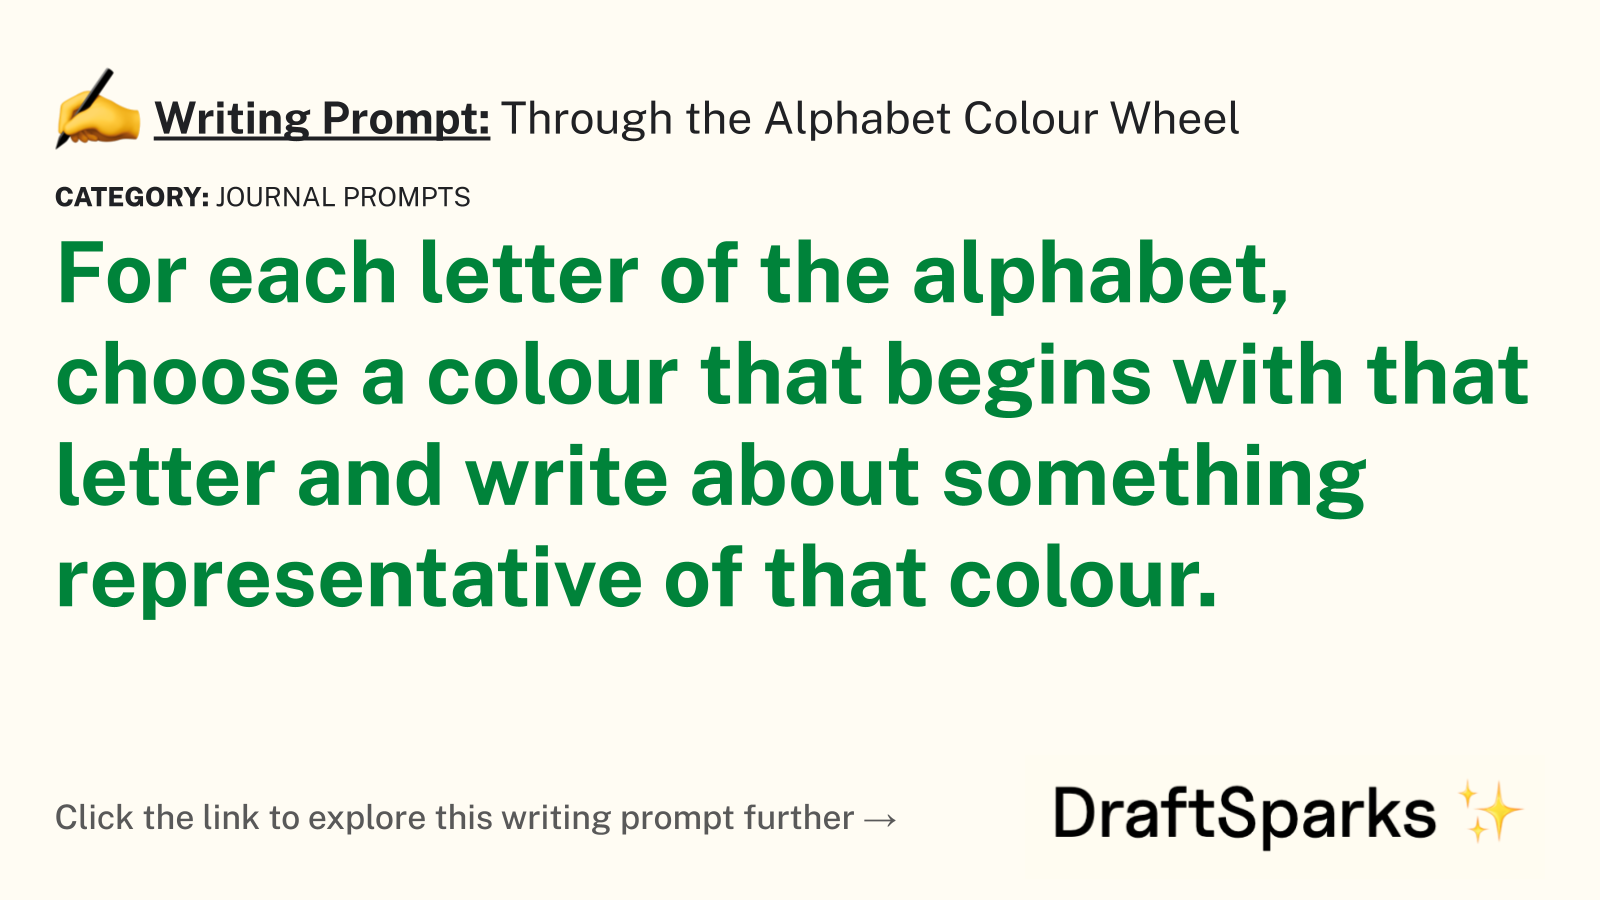 Through the Alphabet Colour Wheel